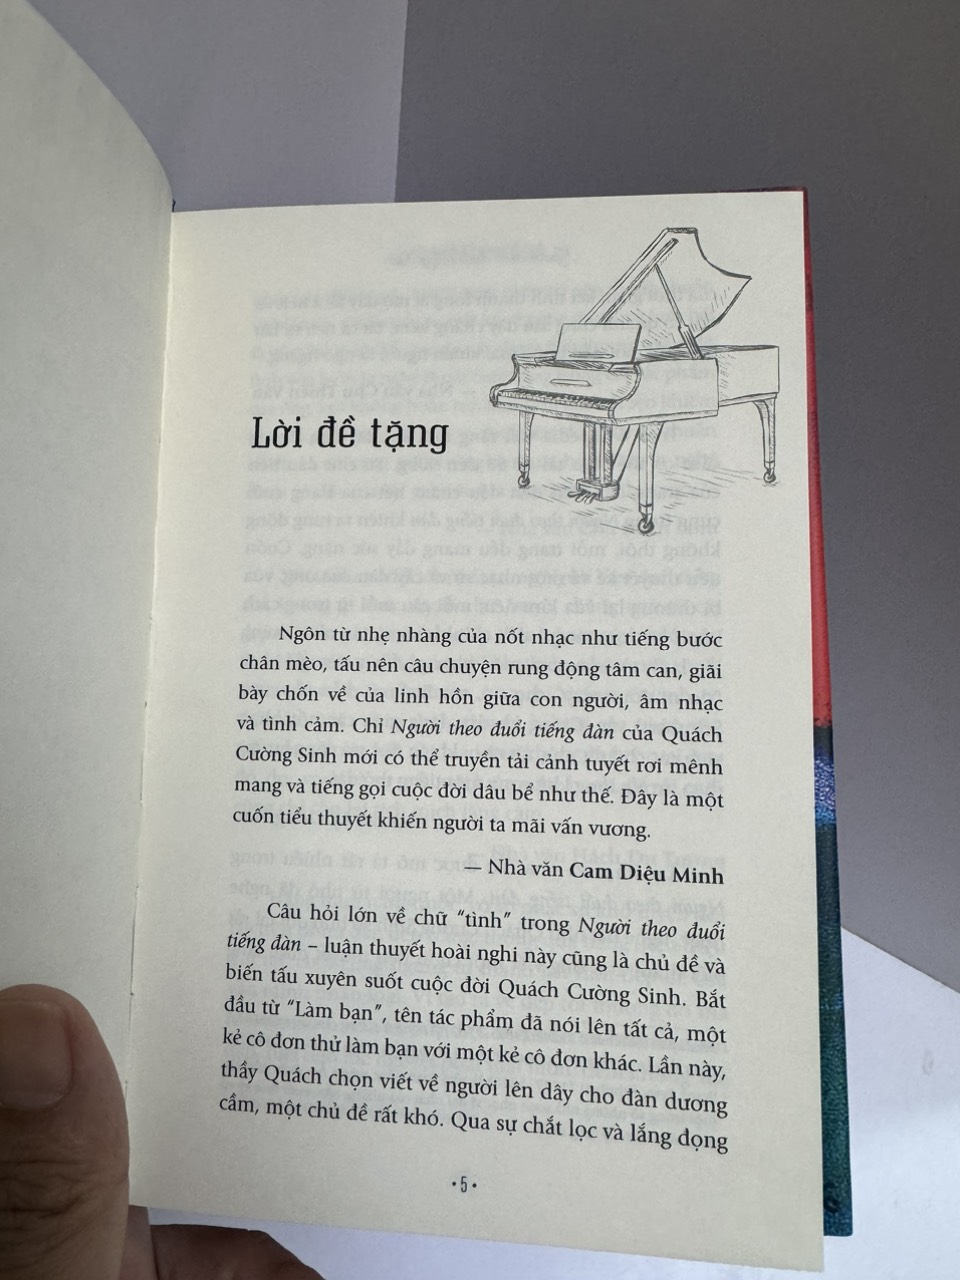 NGƯỜI THEO ĐUỔI TIẾNG ĐÀN – Quách Cường Sinh - Mộc Lâm dịch – NXB Văn học – Gieosbook